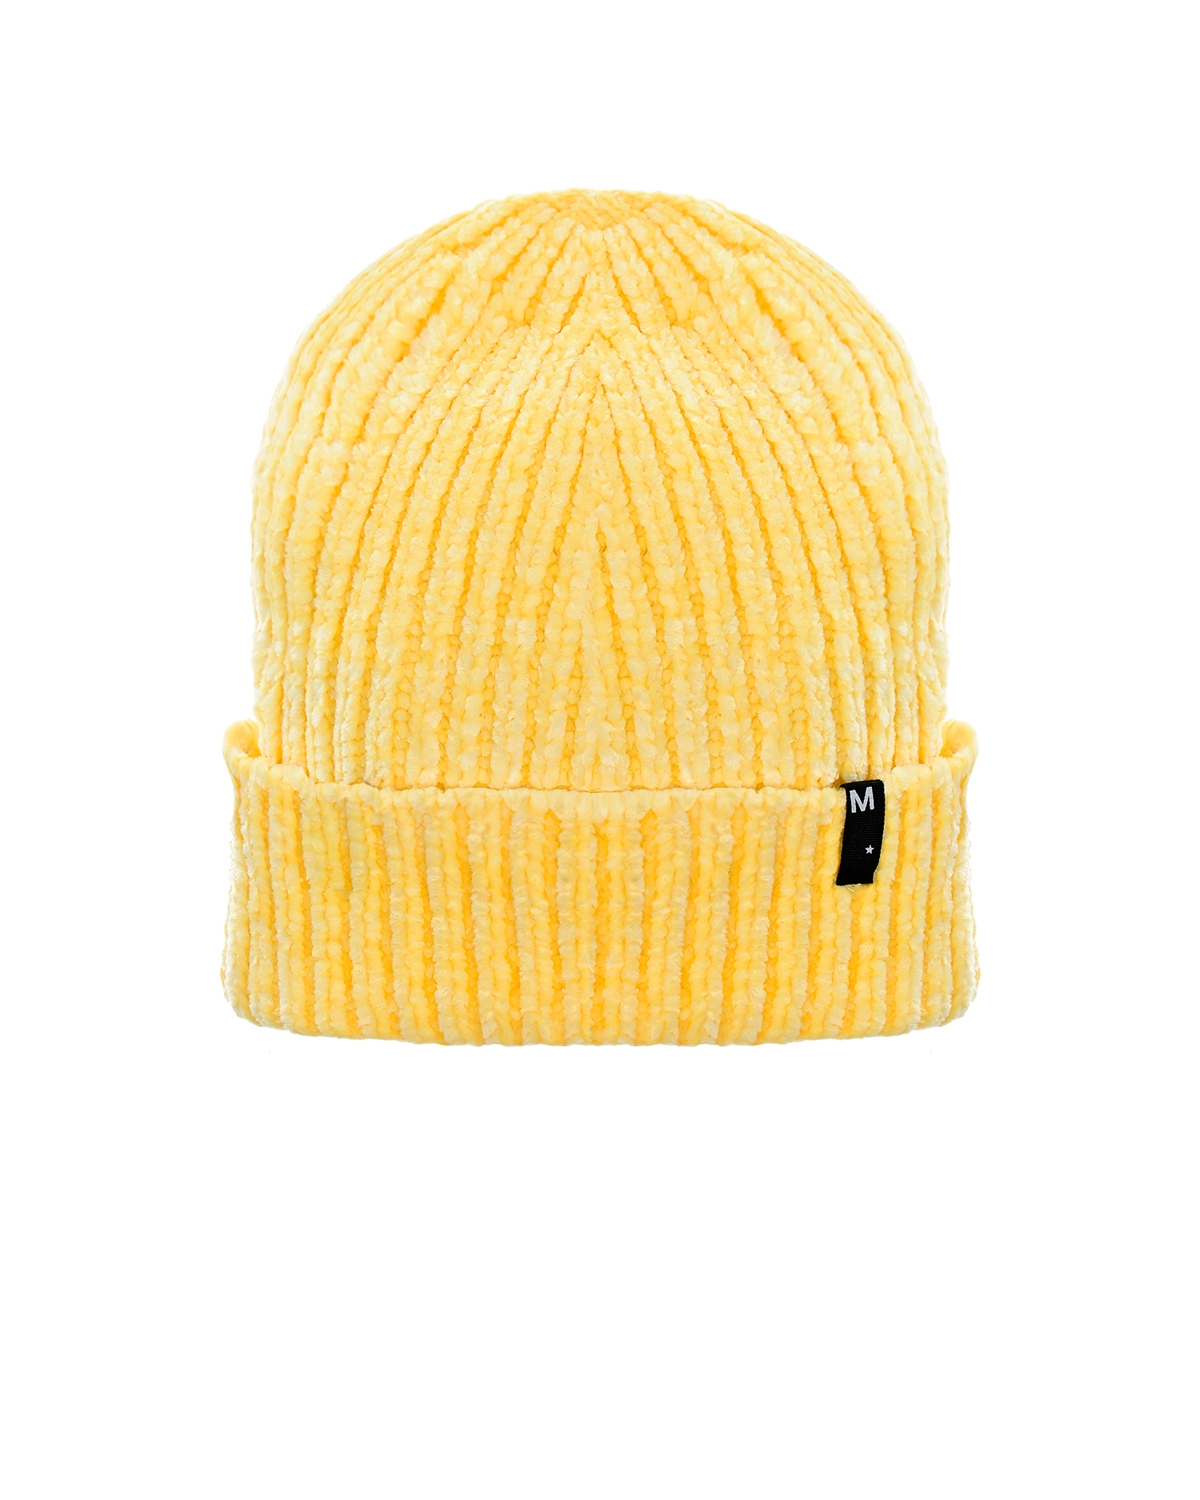 Желтая шапка из велюра Molo детская, Желтый, 100%полиэстер  - купить со скидкой